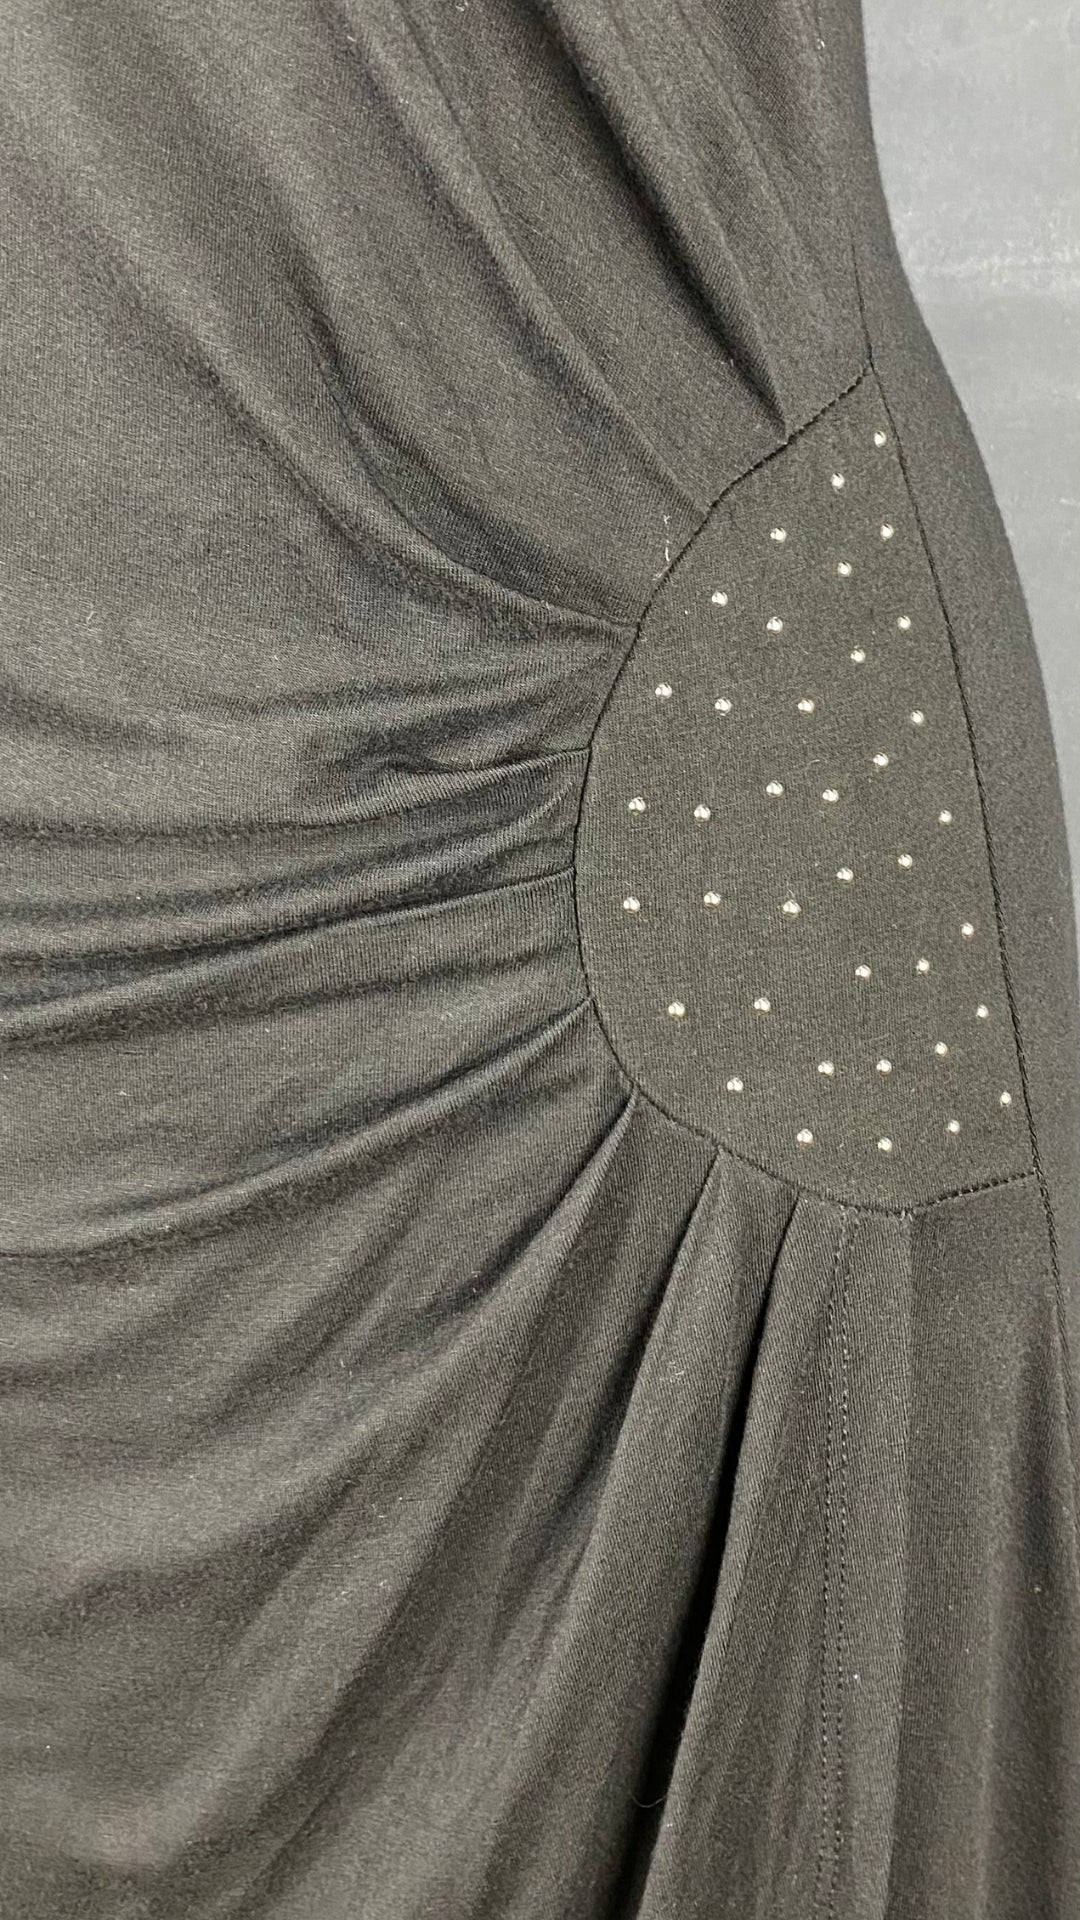 Robe noire drapée La Fée Maraboutée, taille s-m. Vue du plissé à la taille.